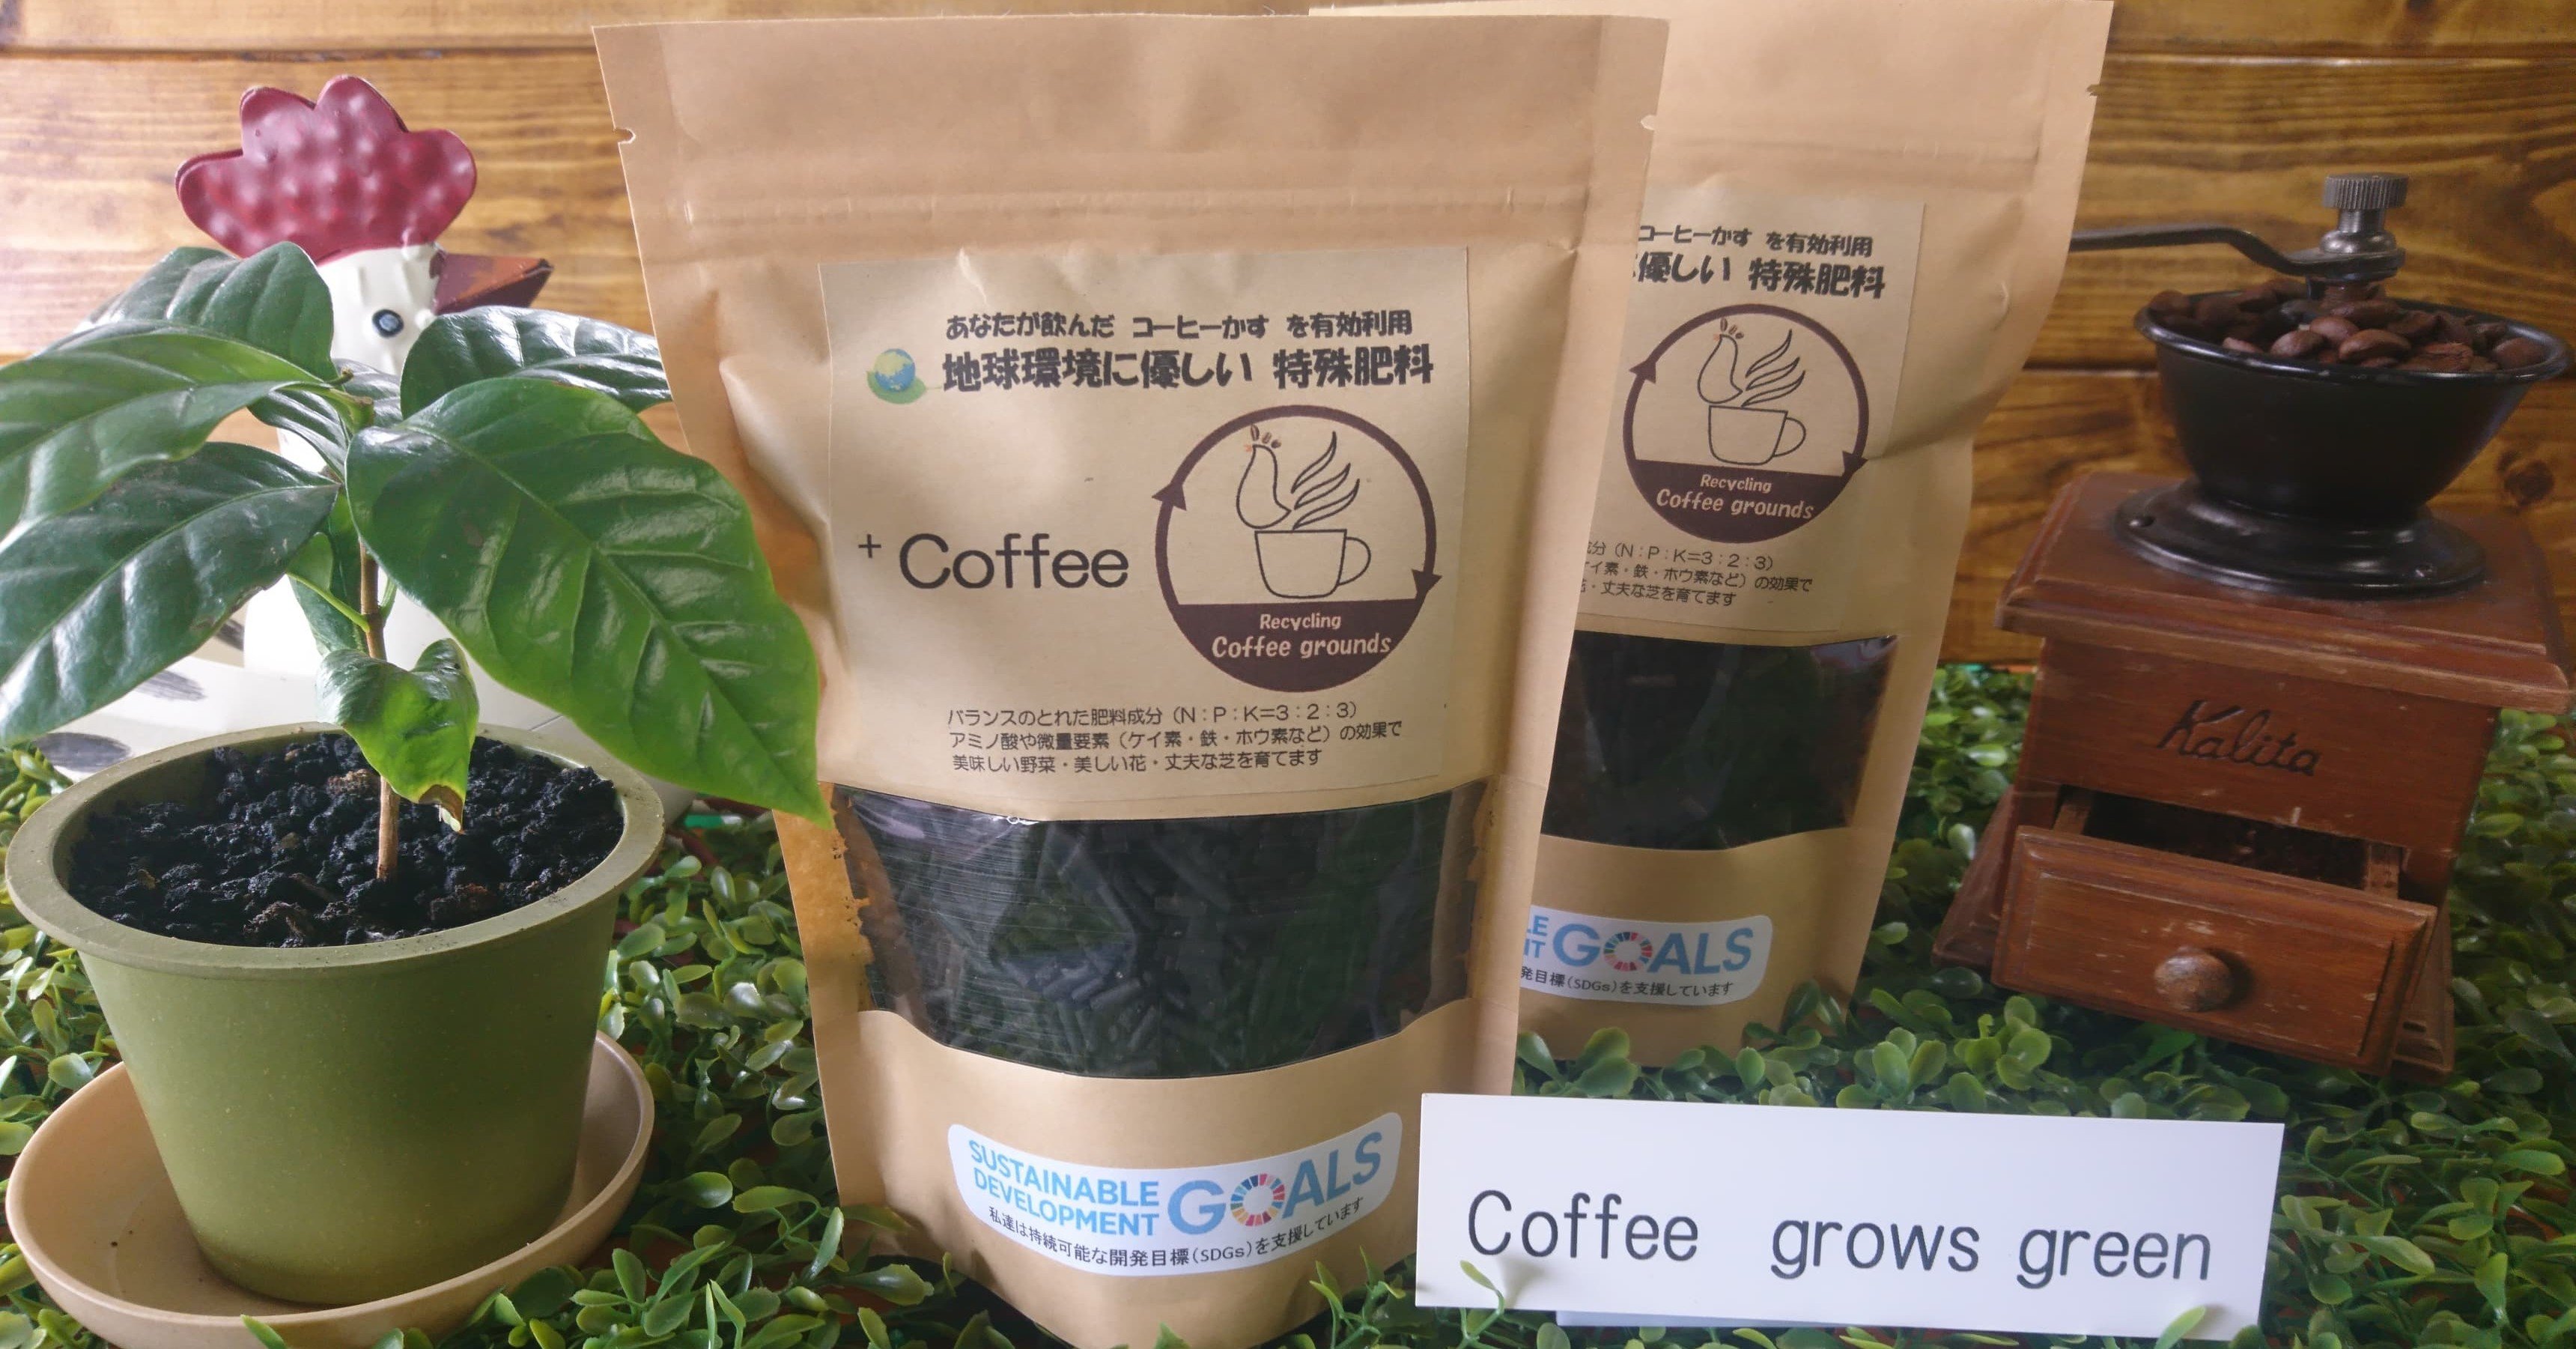 コーヒーごみ 鶏糞肥料で育む 持続可能な食と地域の循環モデル 縁の木 Note